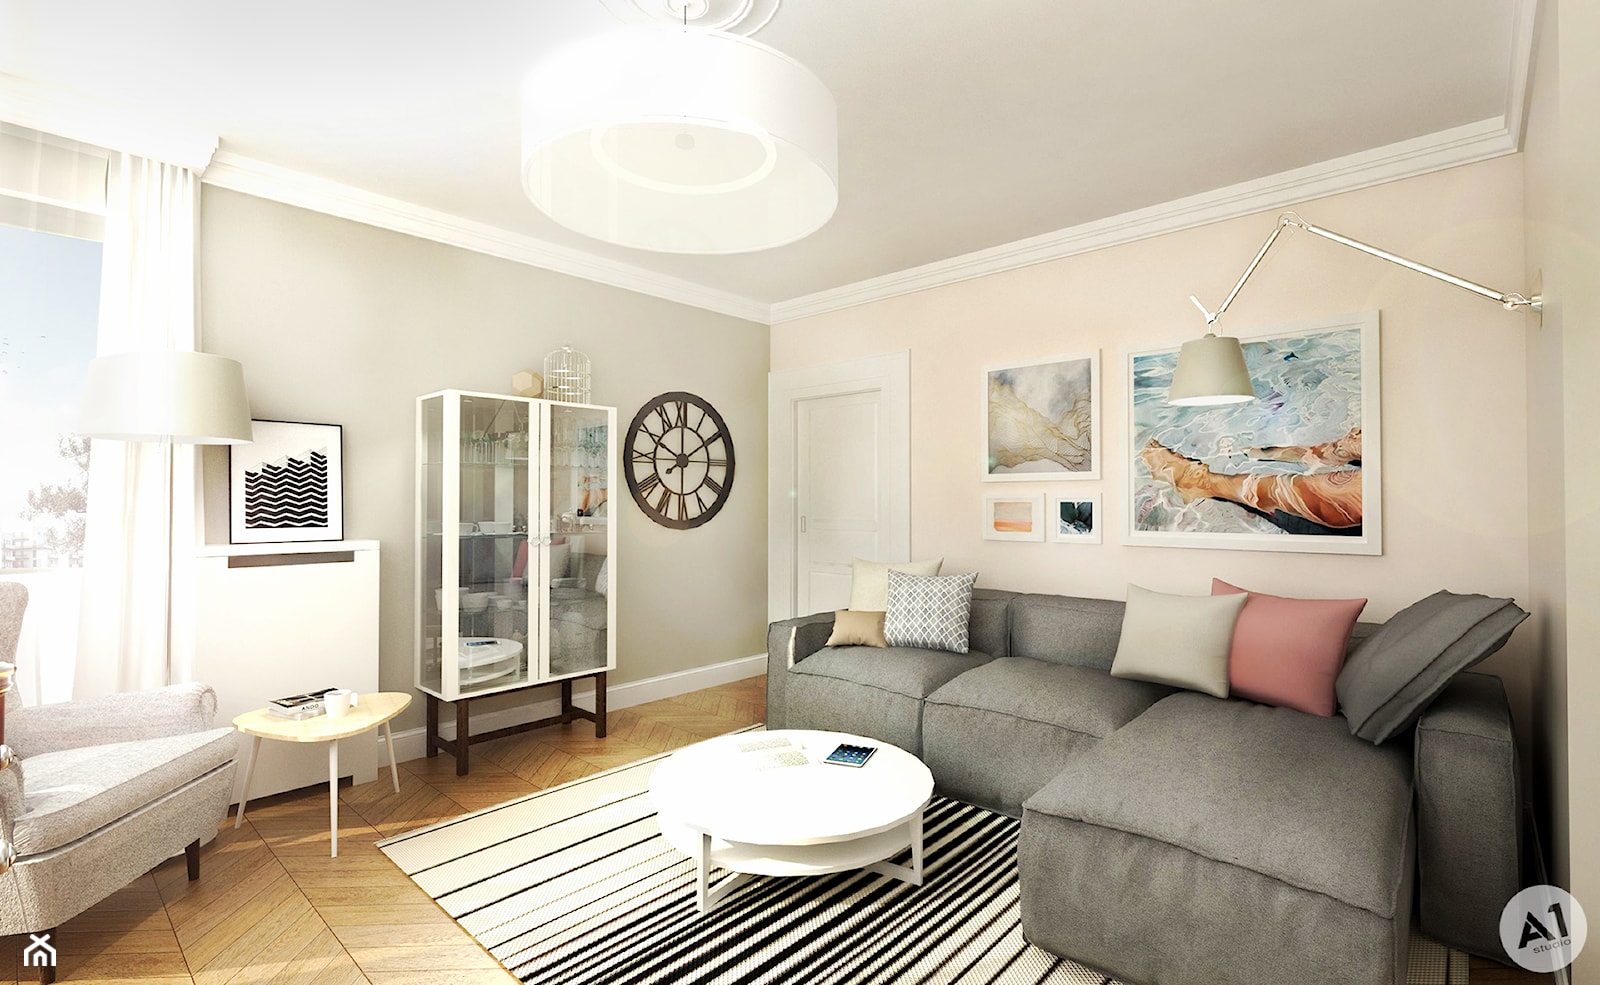 Projekt mieszkania 90 m2 Warszawa - Salon, styl tradycyjny - zdjęcie od A1Studio - Homebook